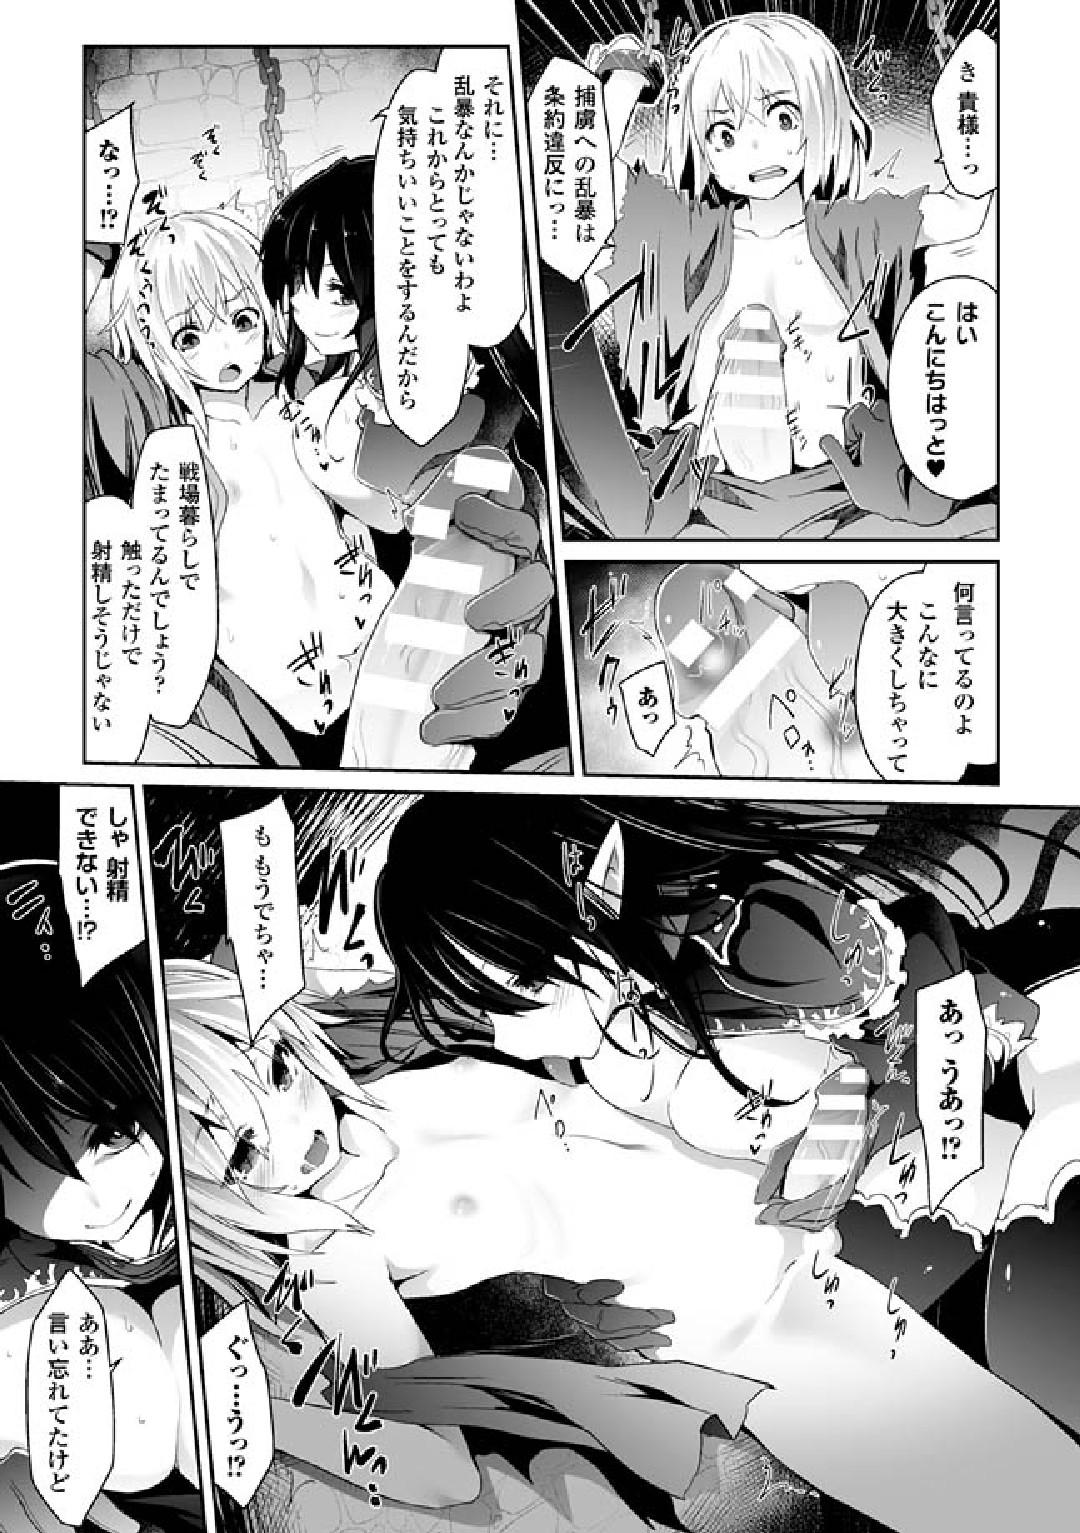 Bra 2D Comic Magazine Hatsujou shite Inran to Kashita Onna-tachi Vol. 1 Staxxx - Page 9